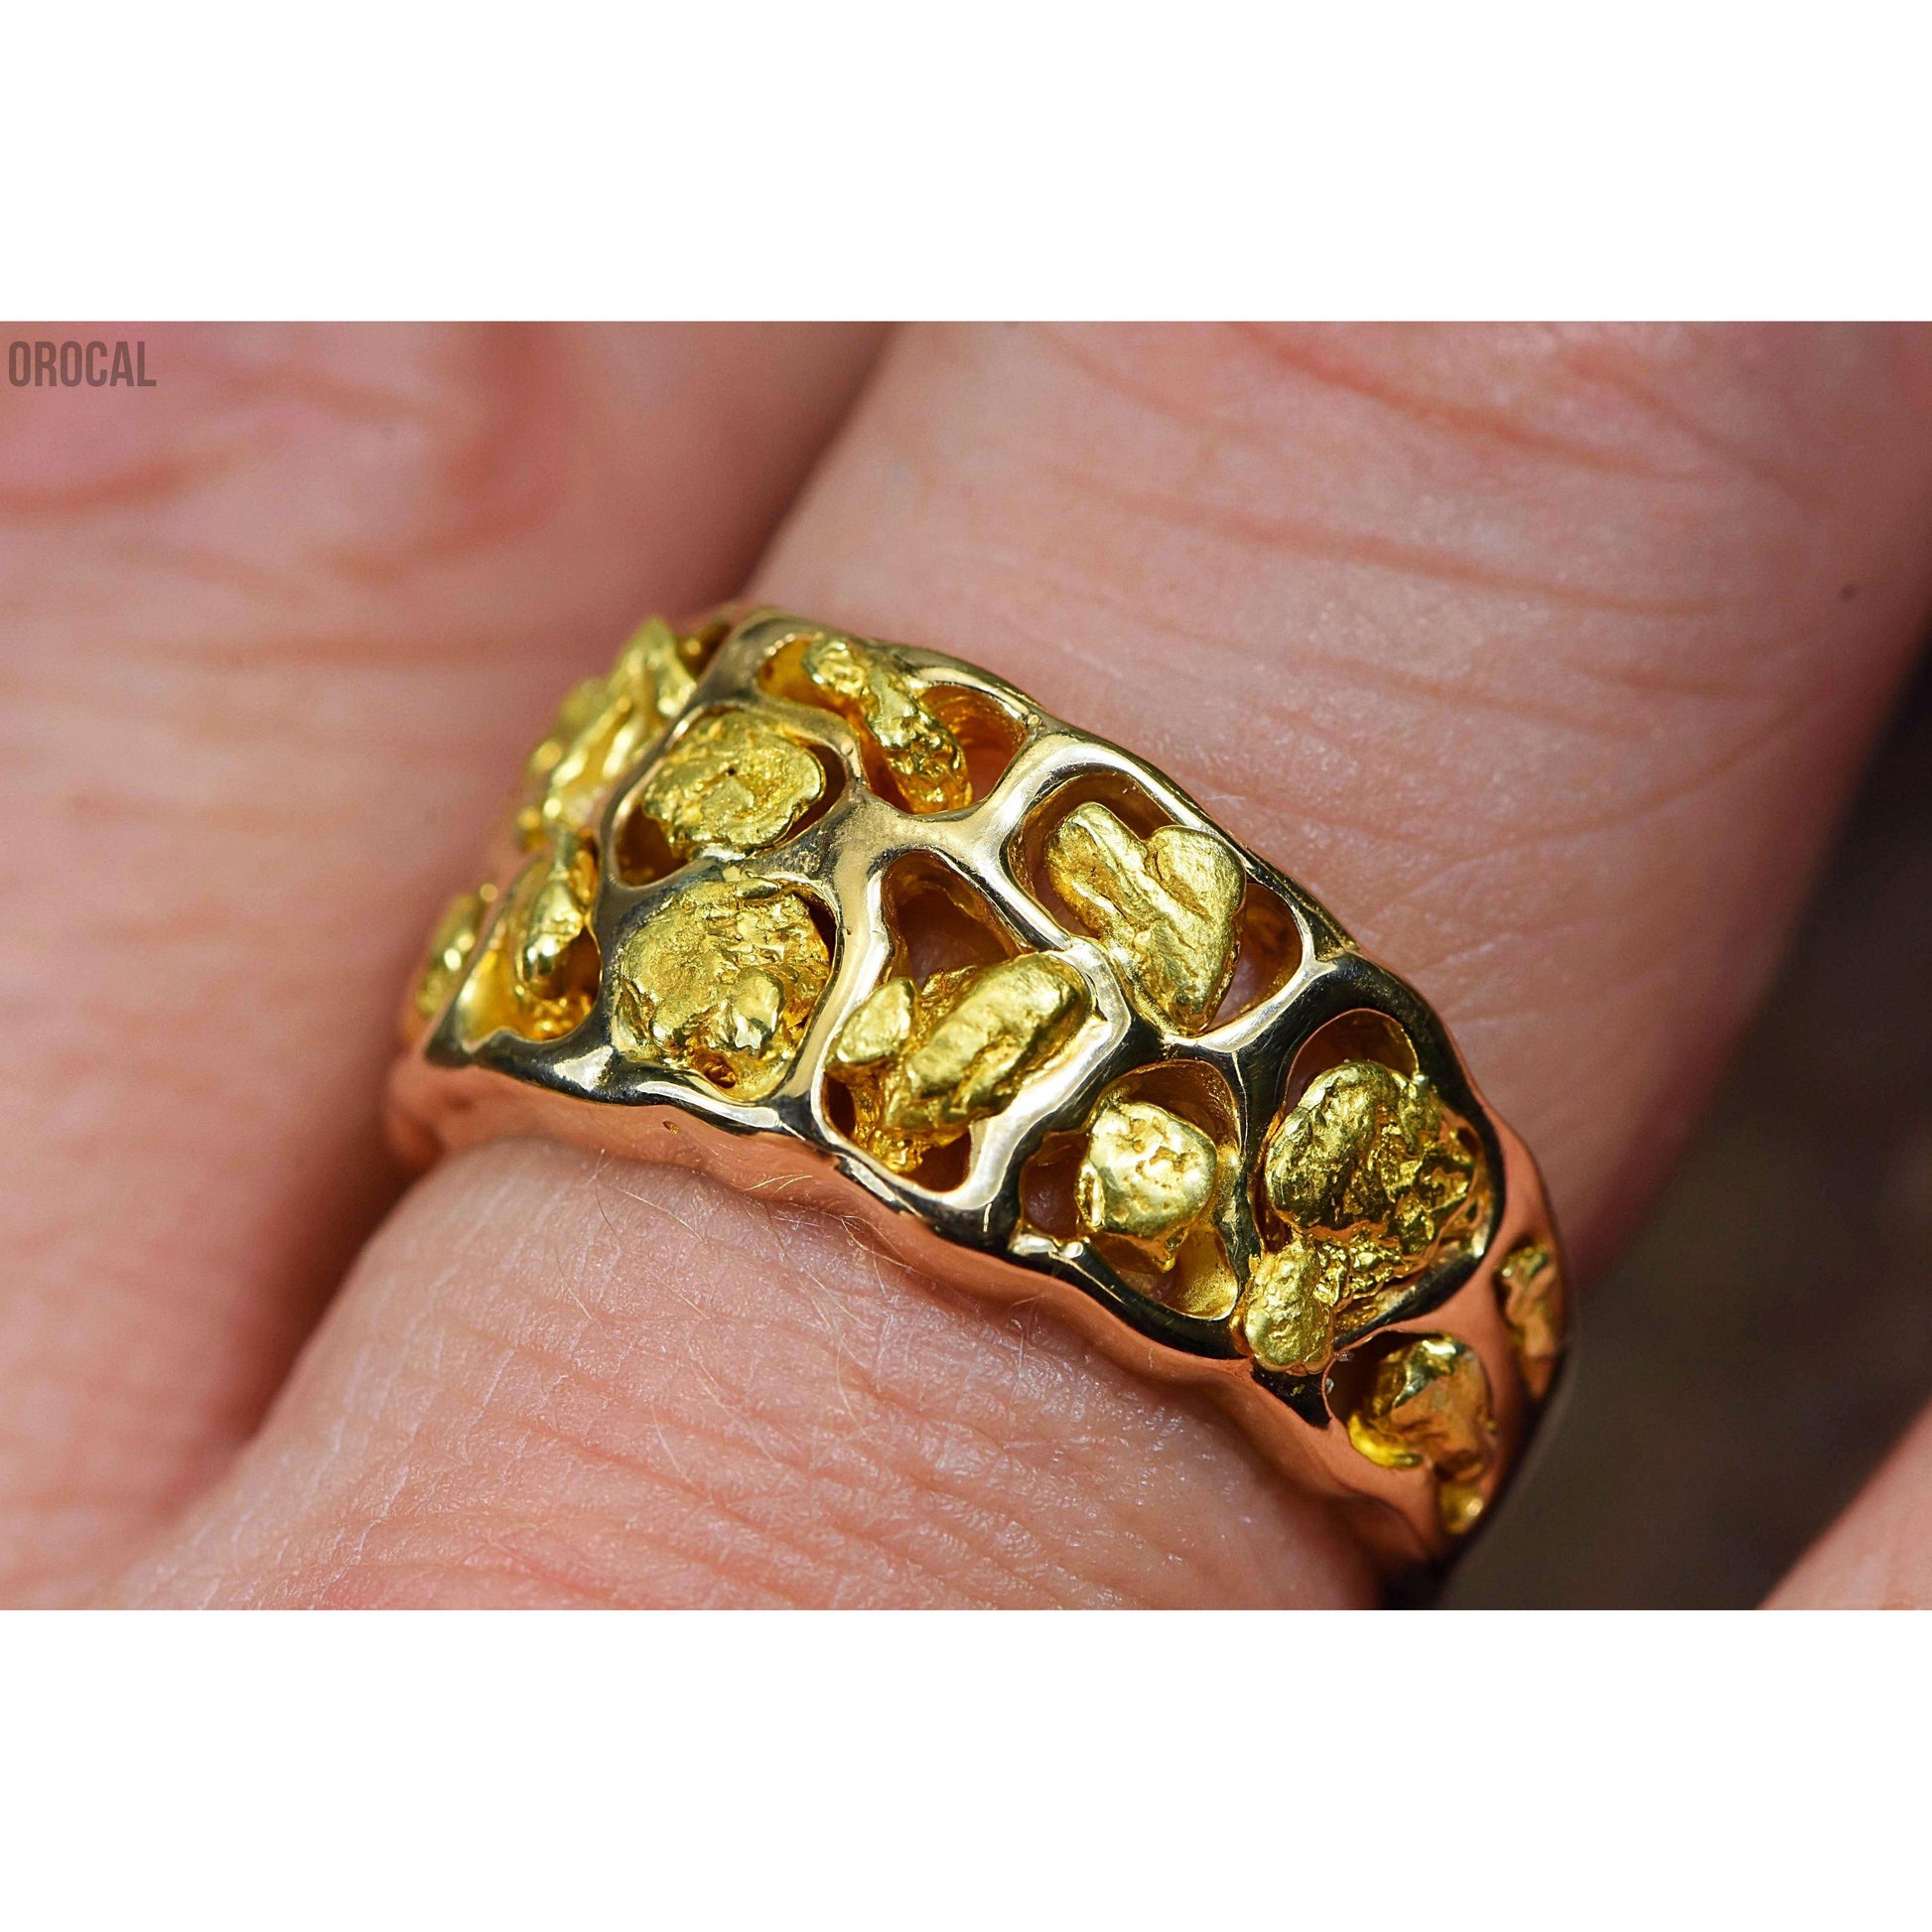 Gold Nugget Men's Ring - RM184-Destination Gold Detectors